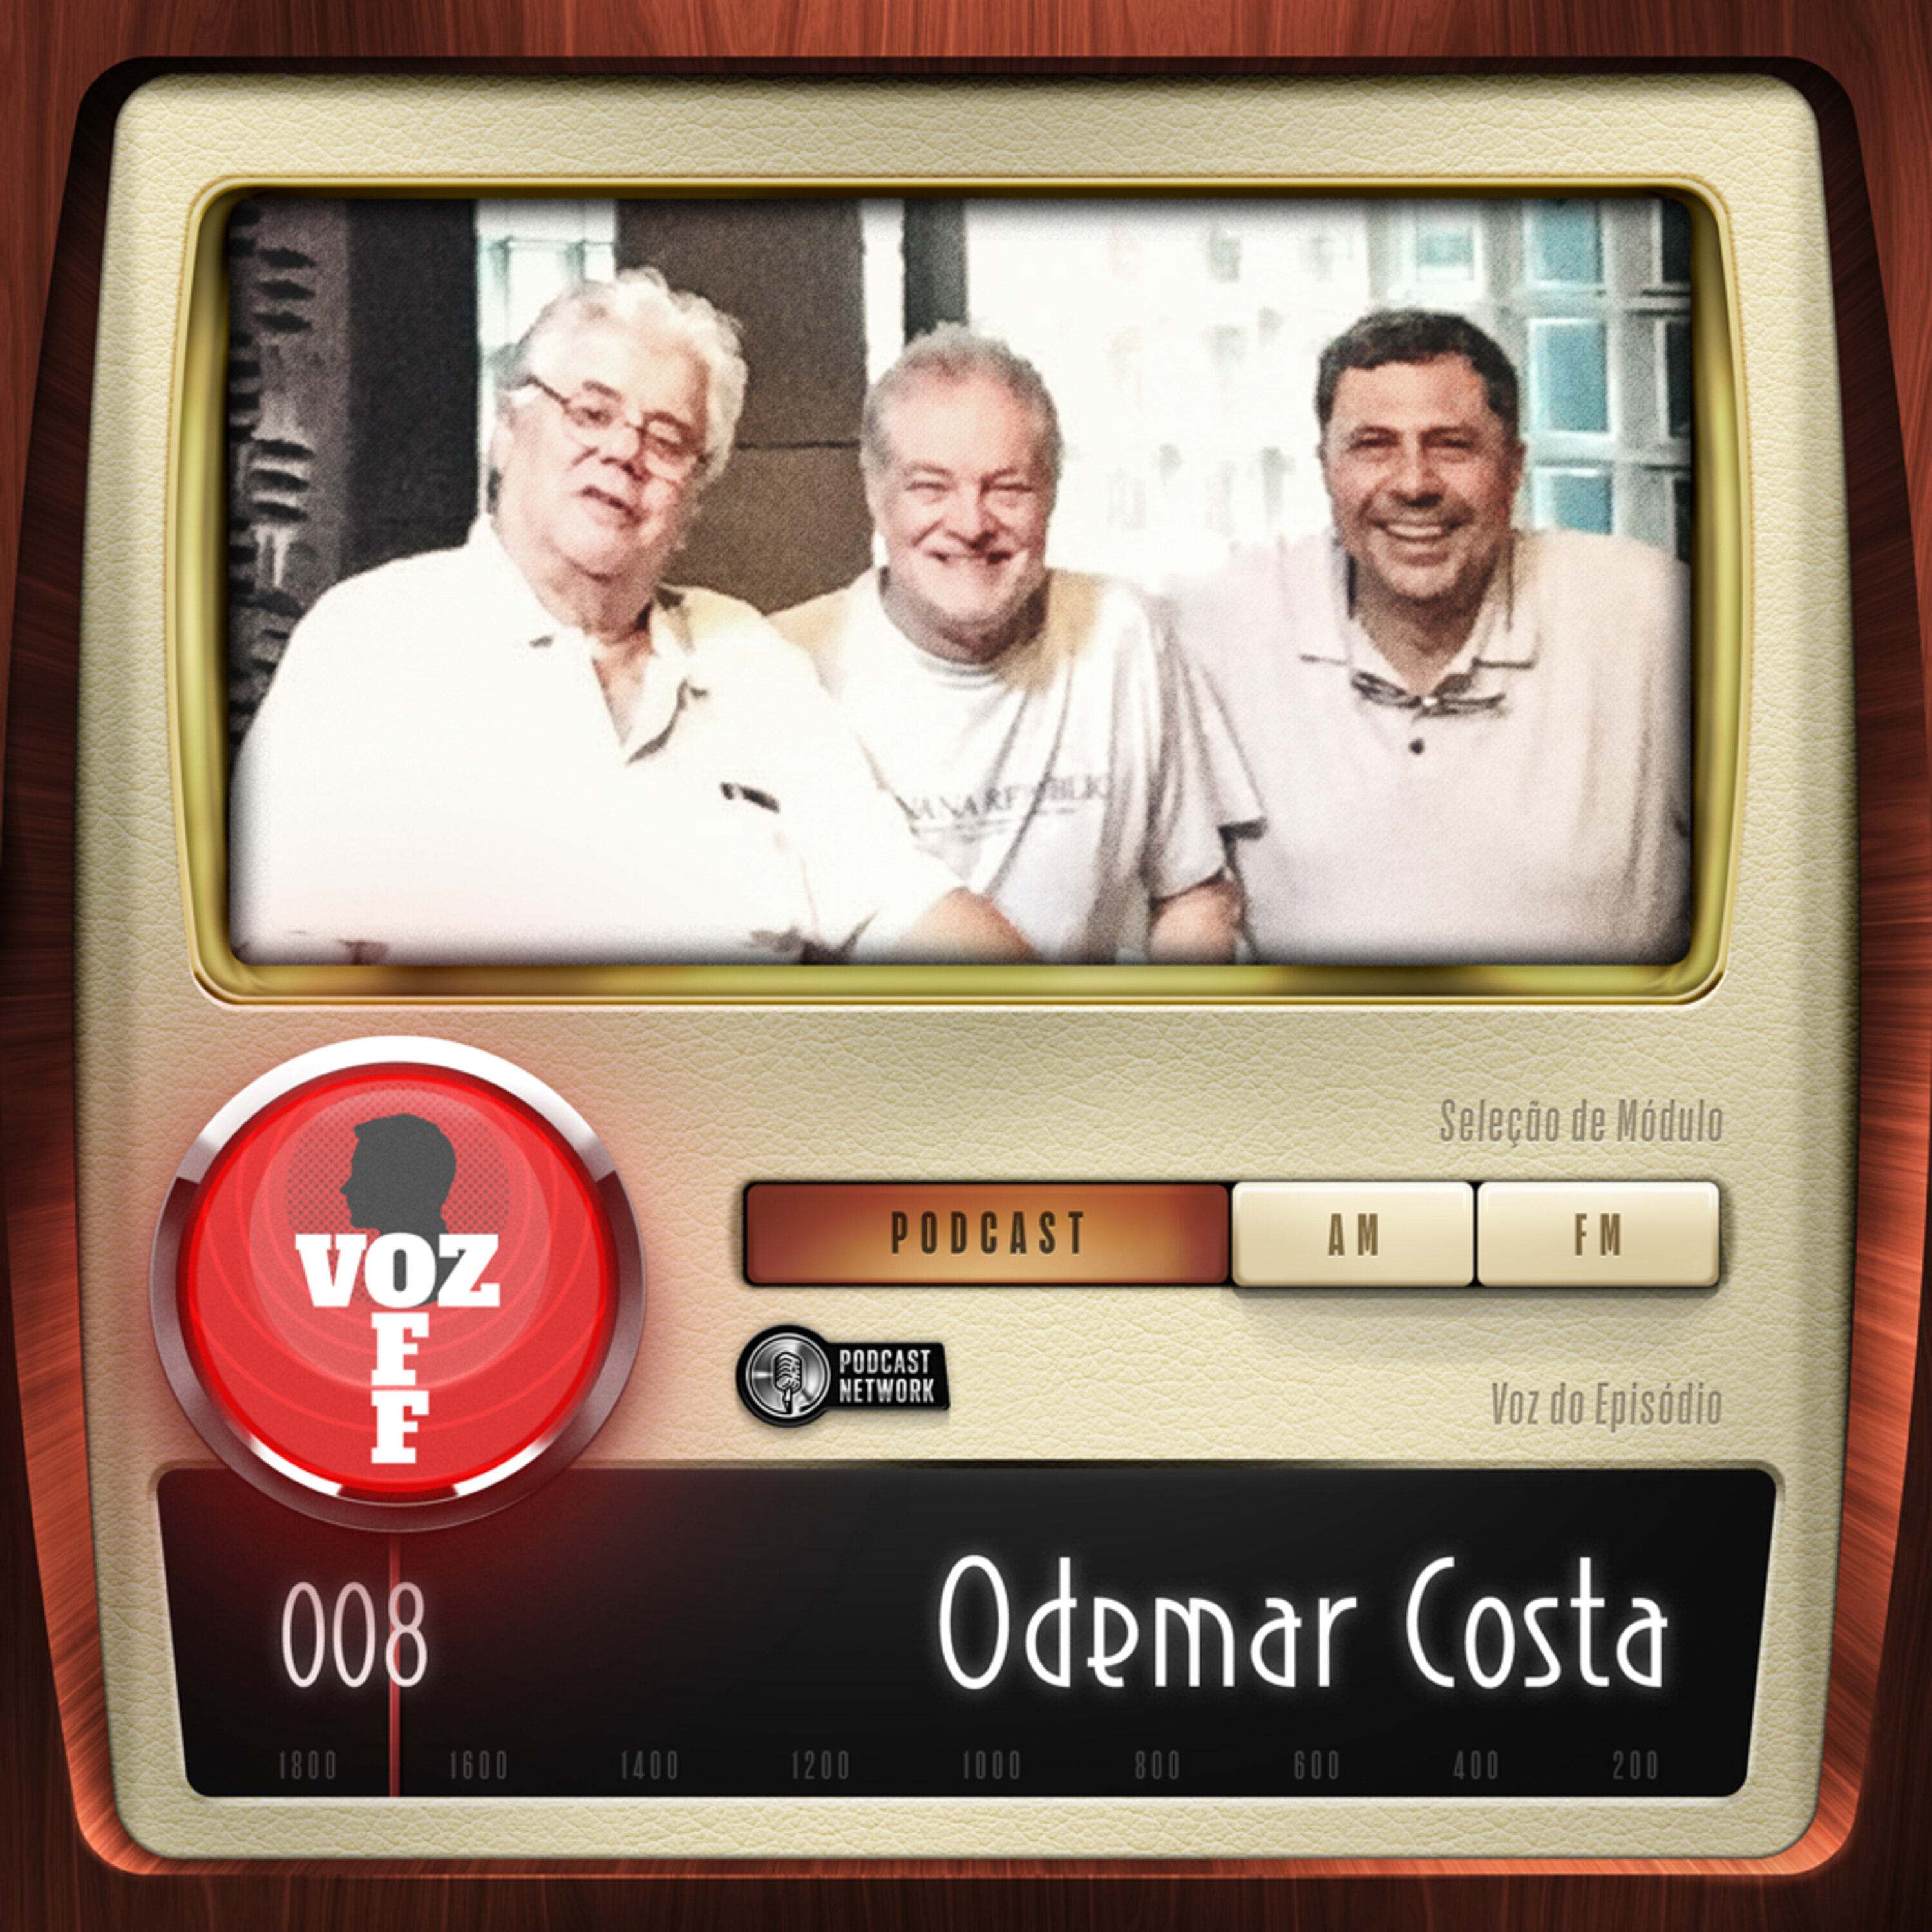 VOZ OFF 008 – Odemar Costa